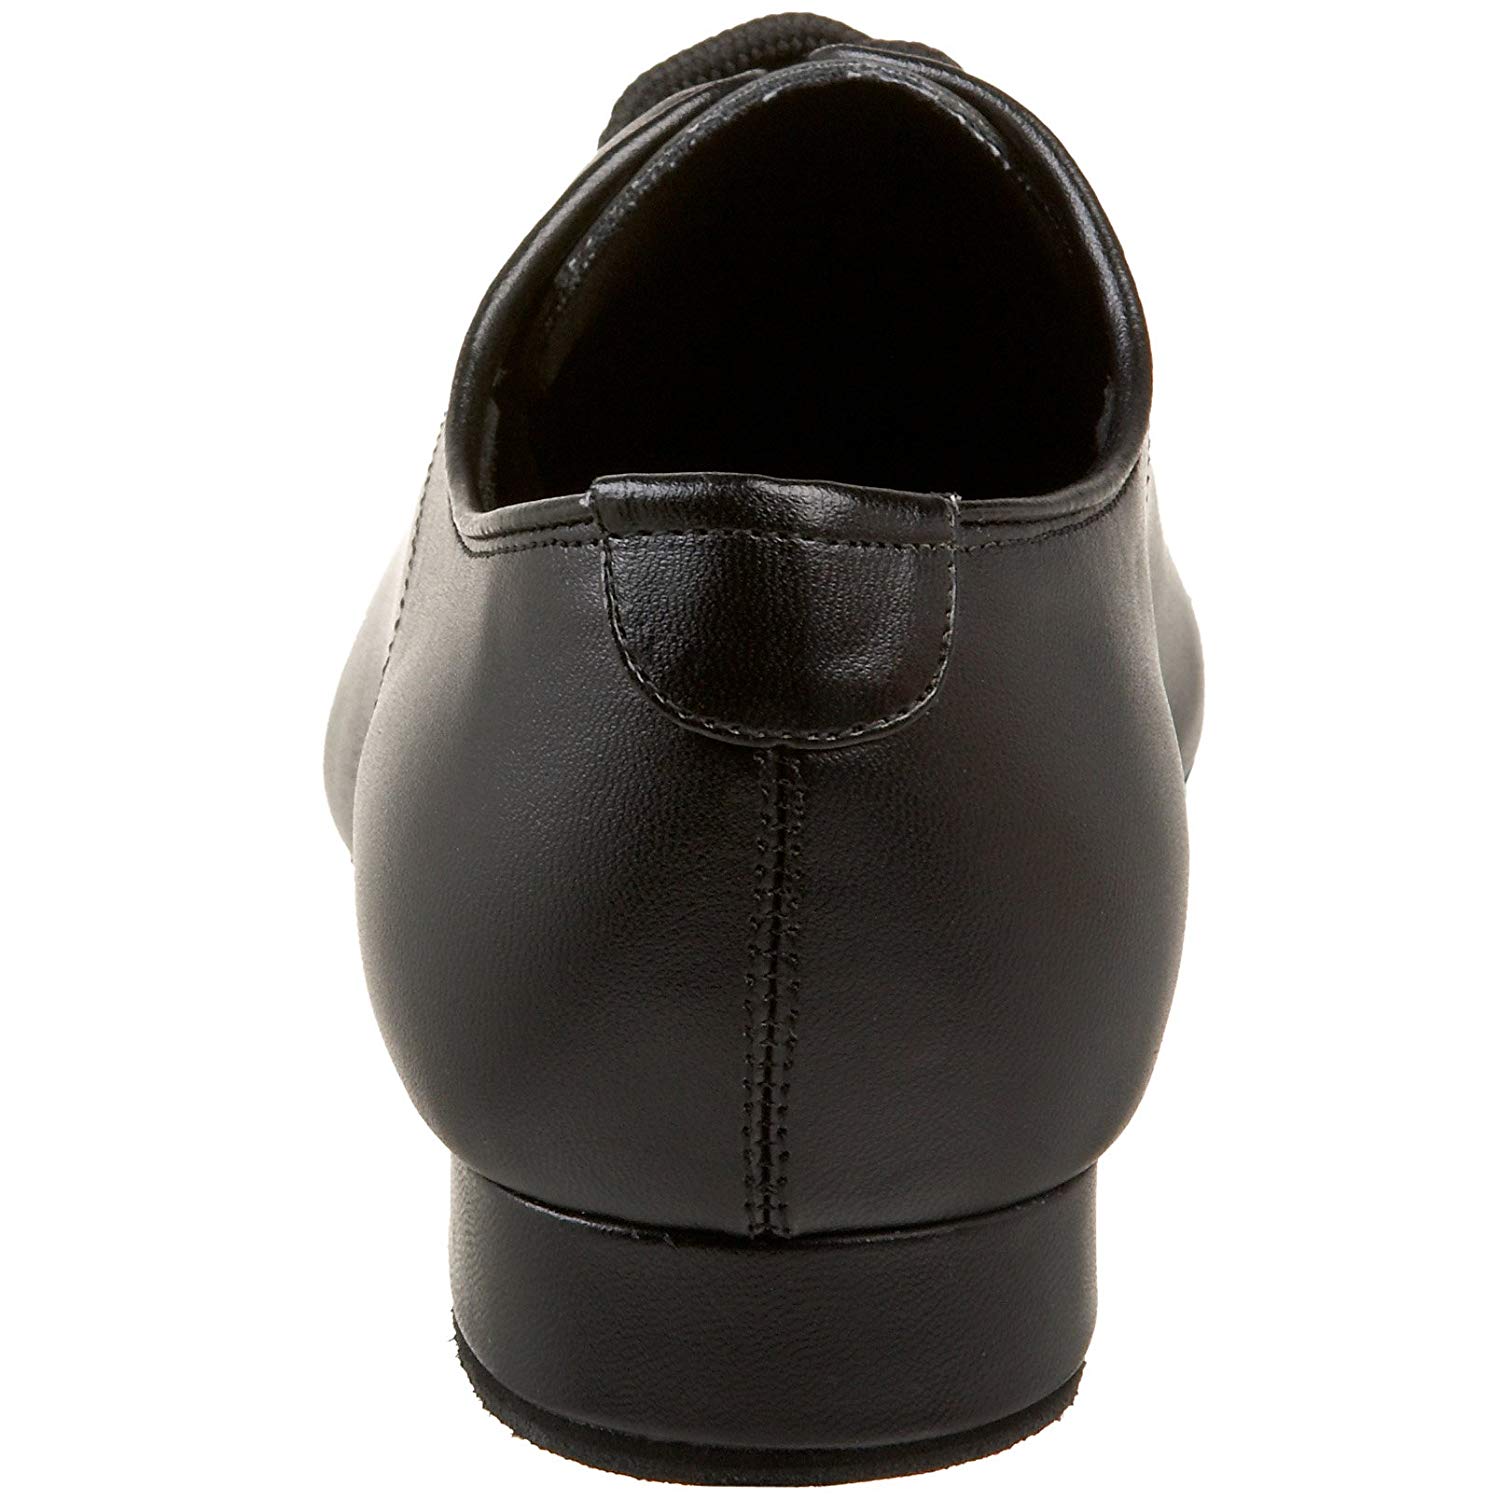 Capezio Men's SD103 Social Dance Shoe, Black, Size 10.0 LKpQ | eBay